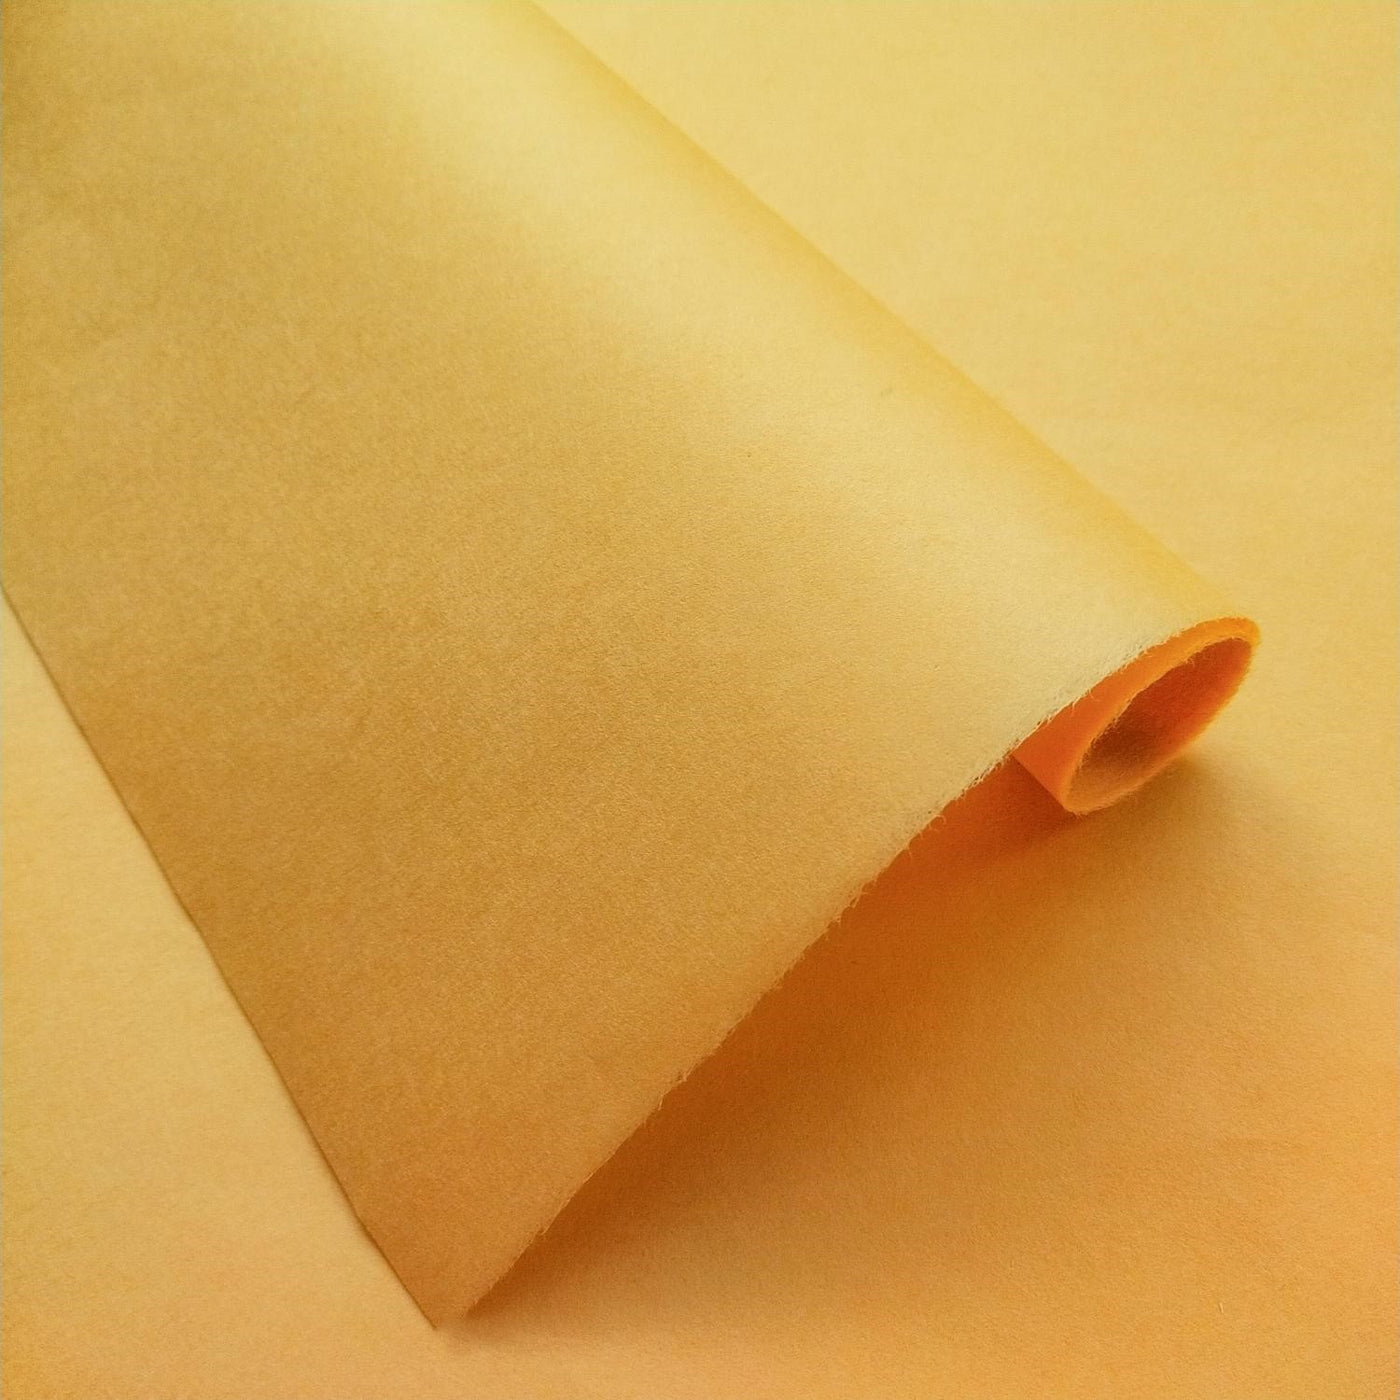 Solid-Colored Kozo Mulberry Paper (Saffron)